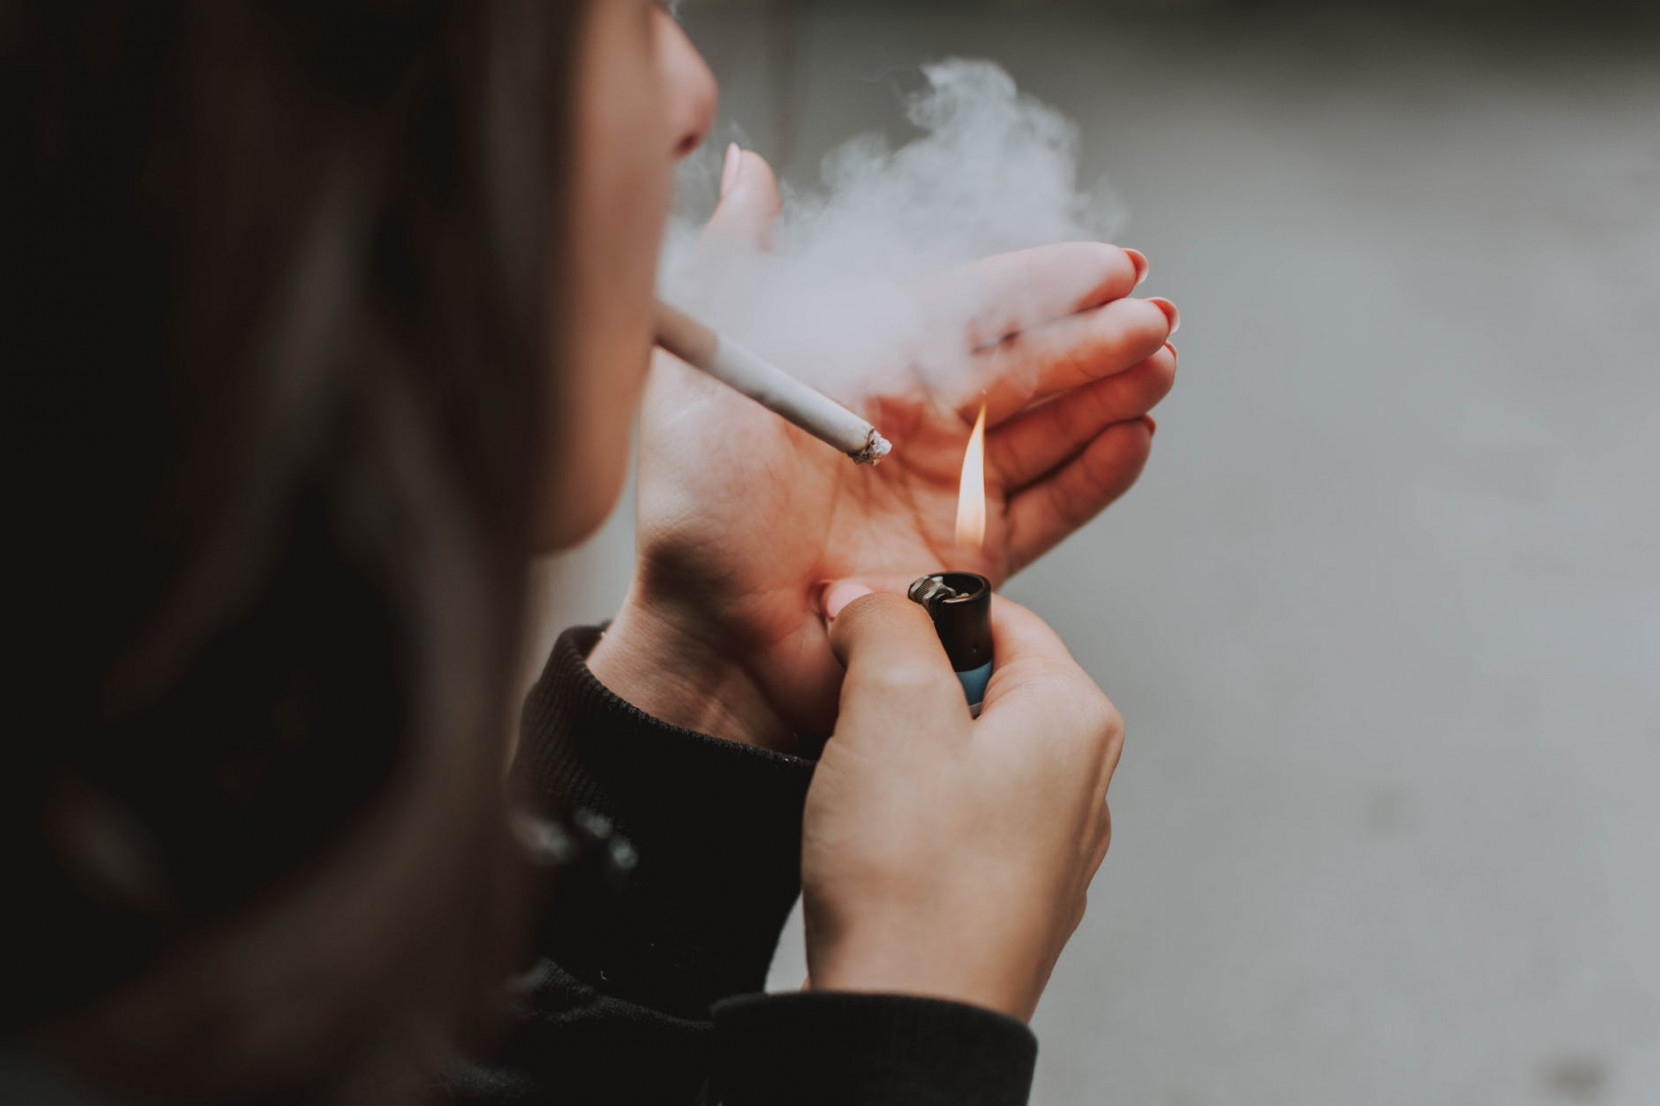 Meno pause per i fumatori - nuovo regolamento in Cantone